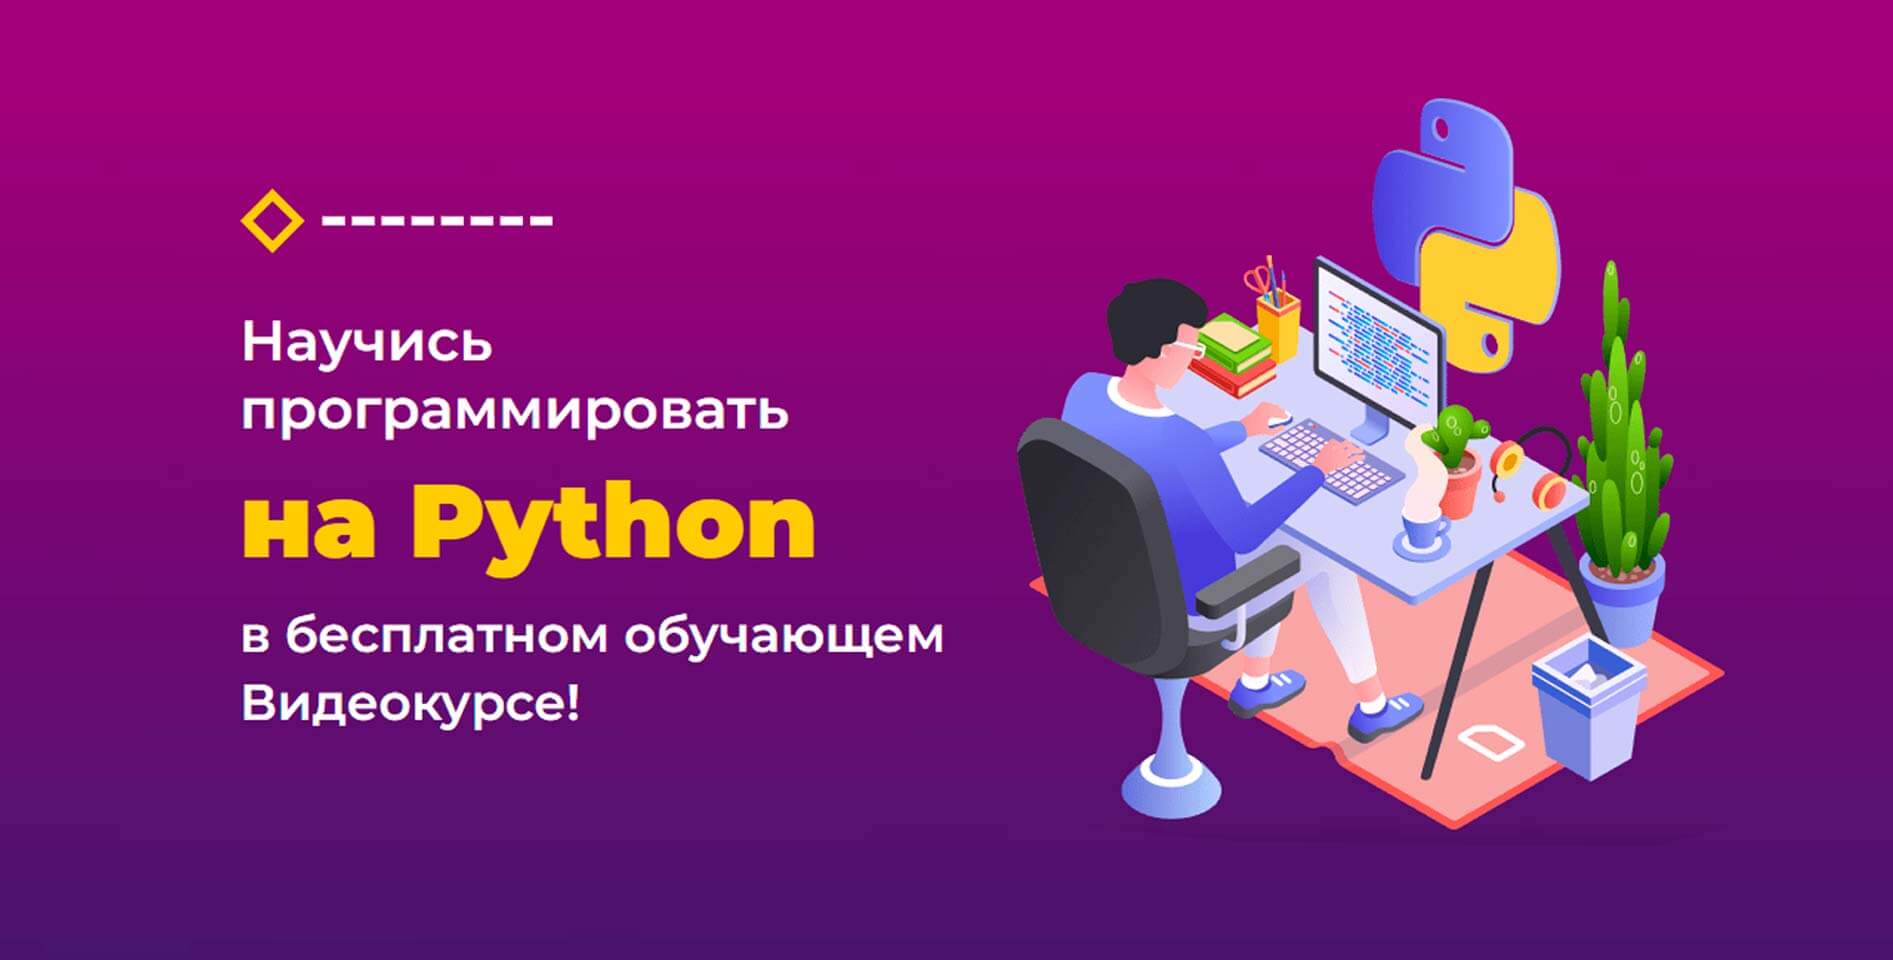 Михаил Русаков — Программирование на Python для начинающих